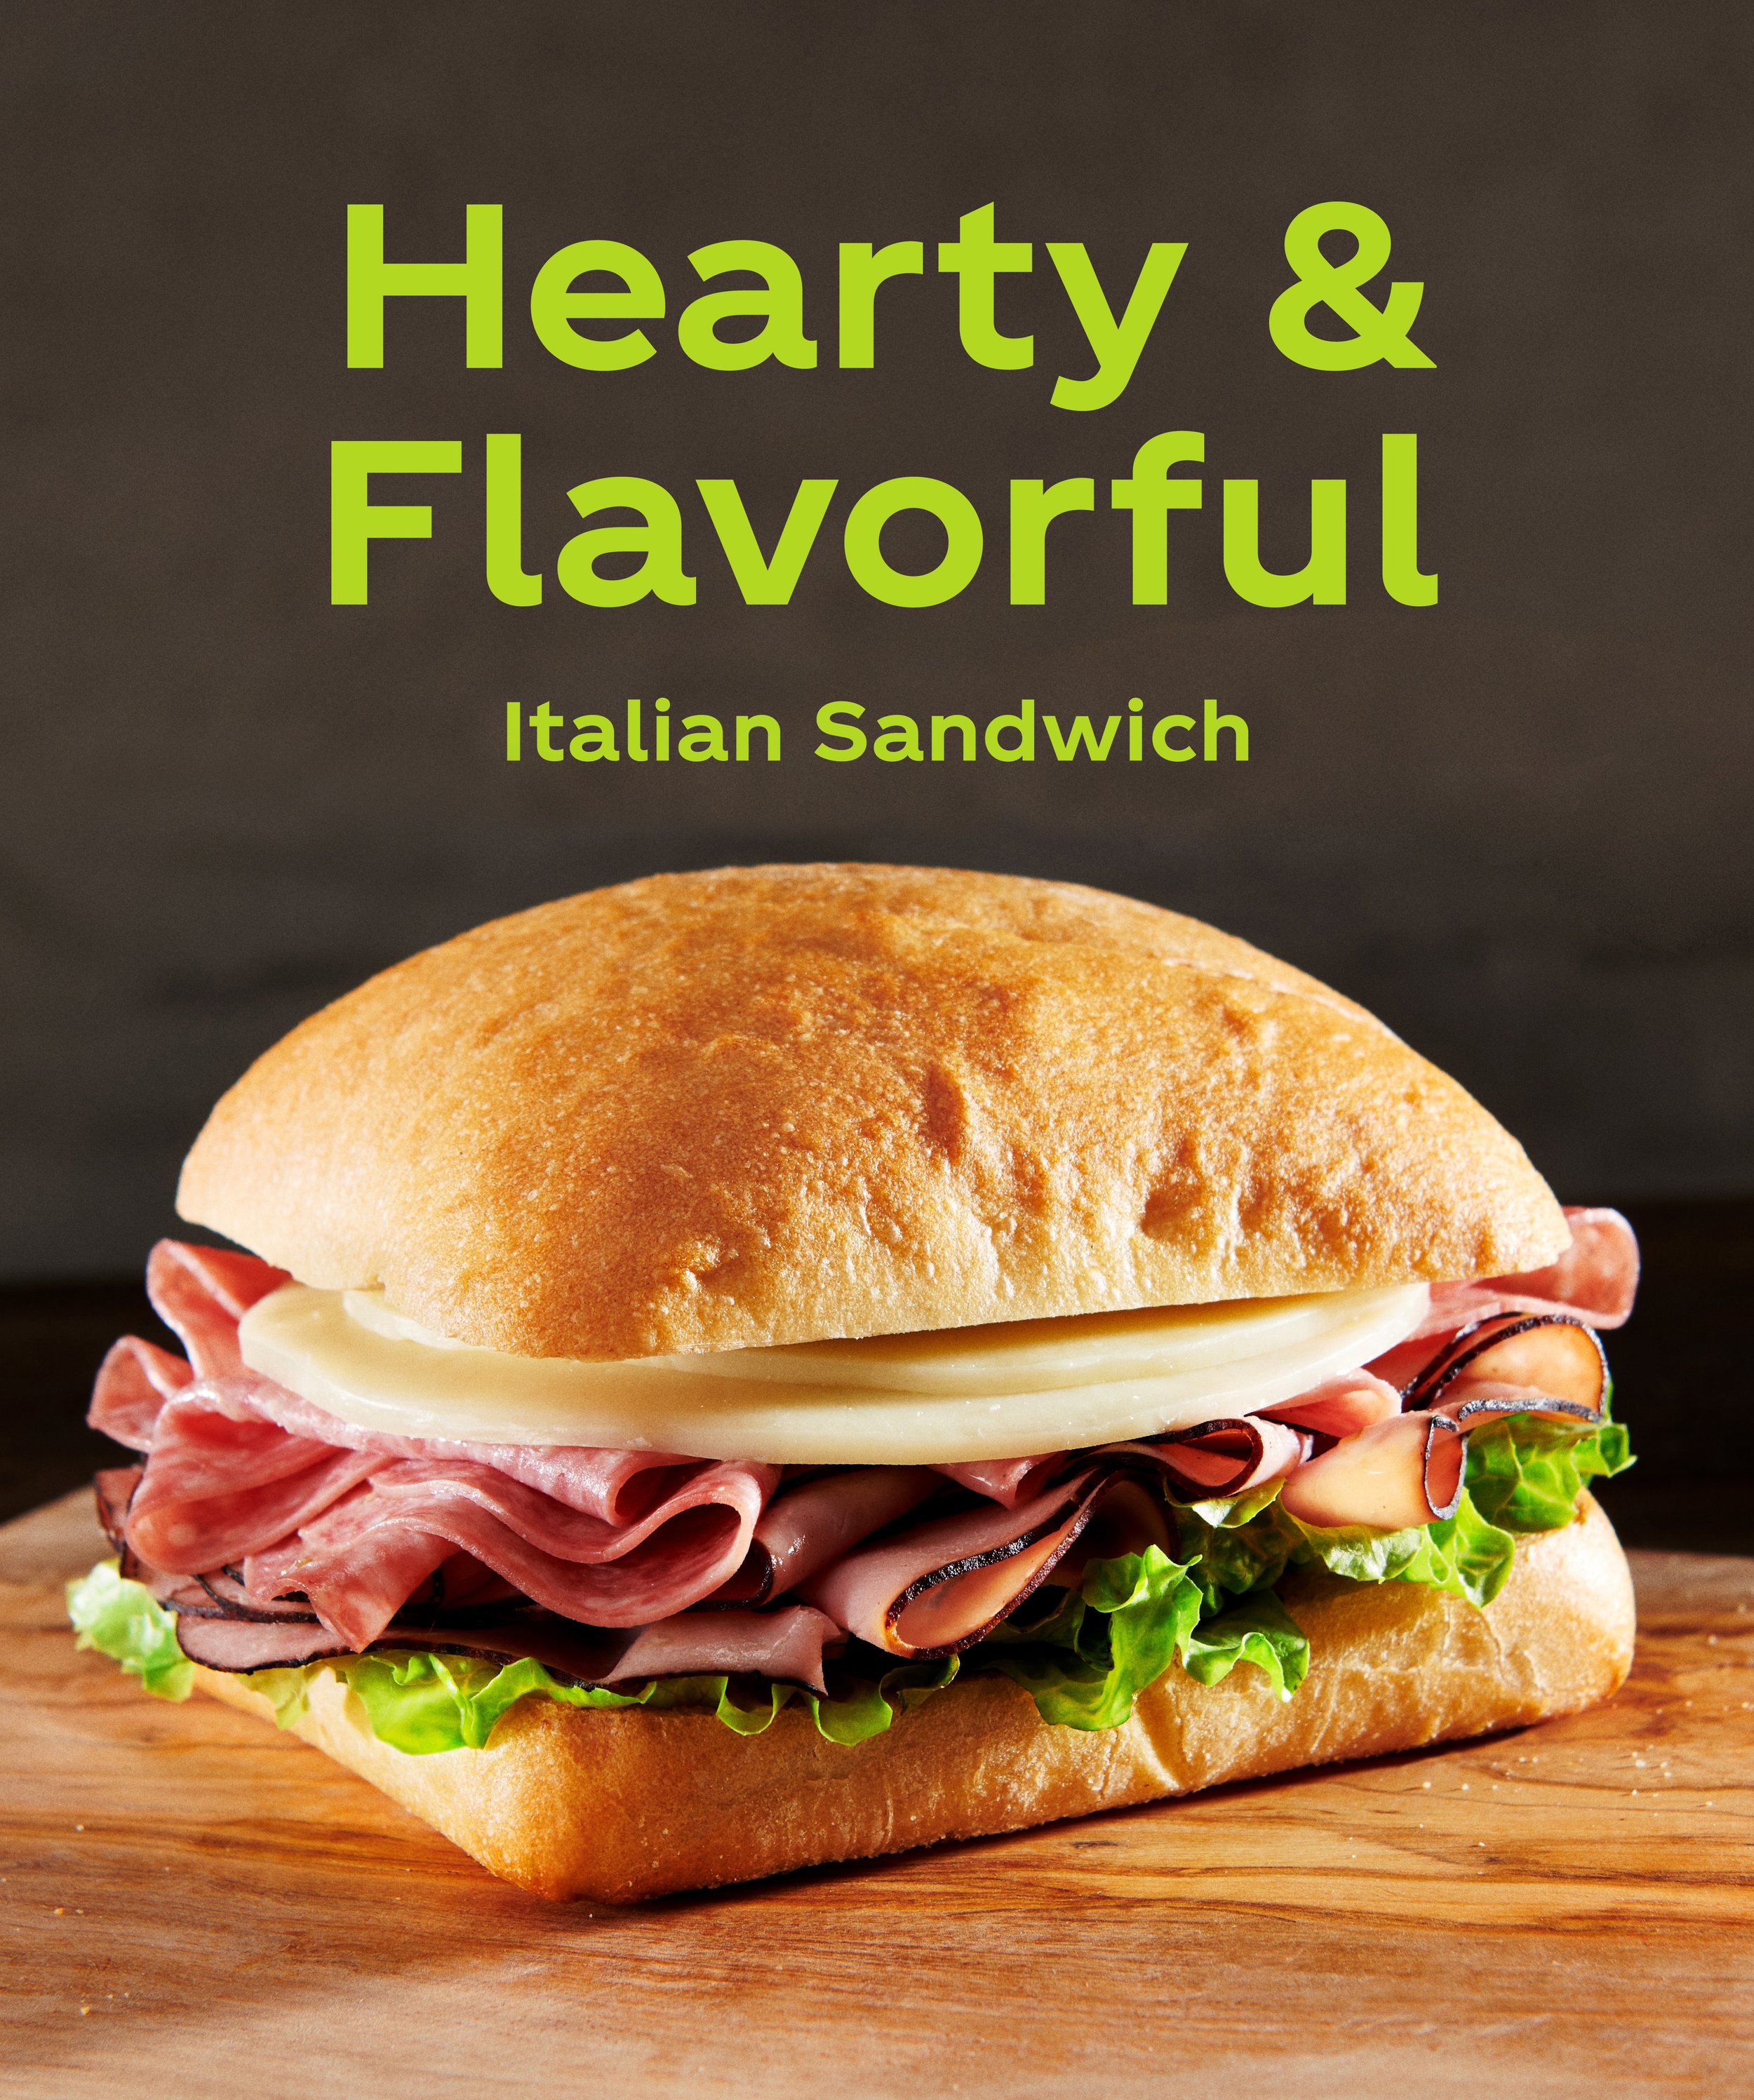 BCC_Menu Board_Italian Sandwich_WEBSITE.jpg